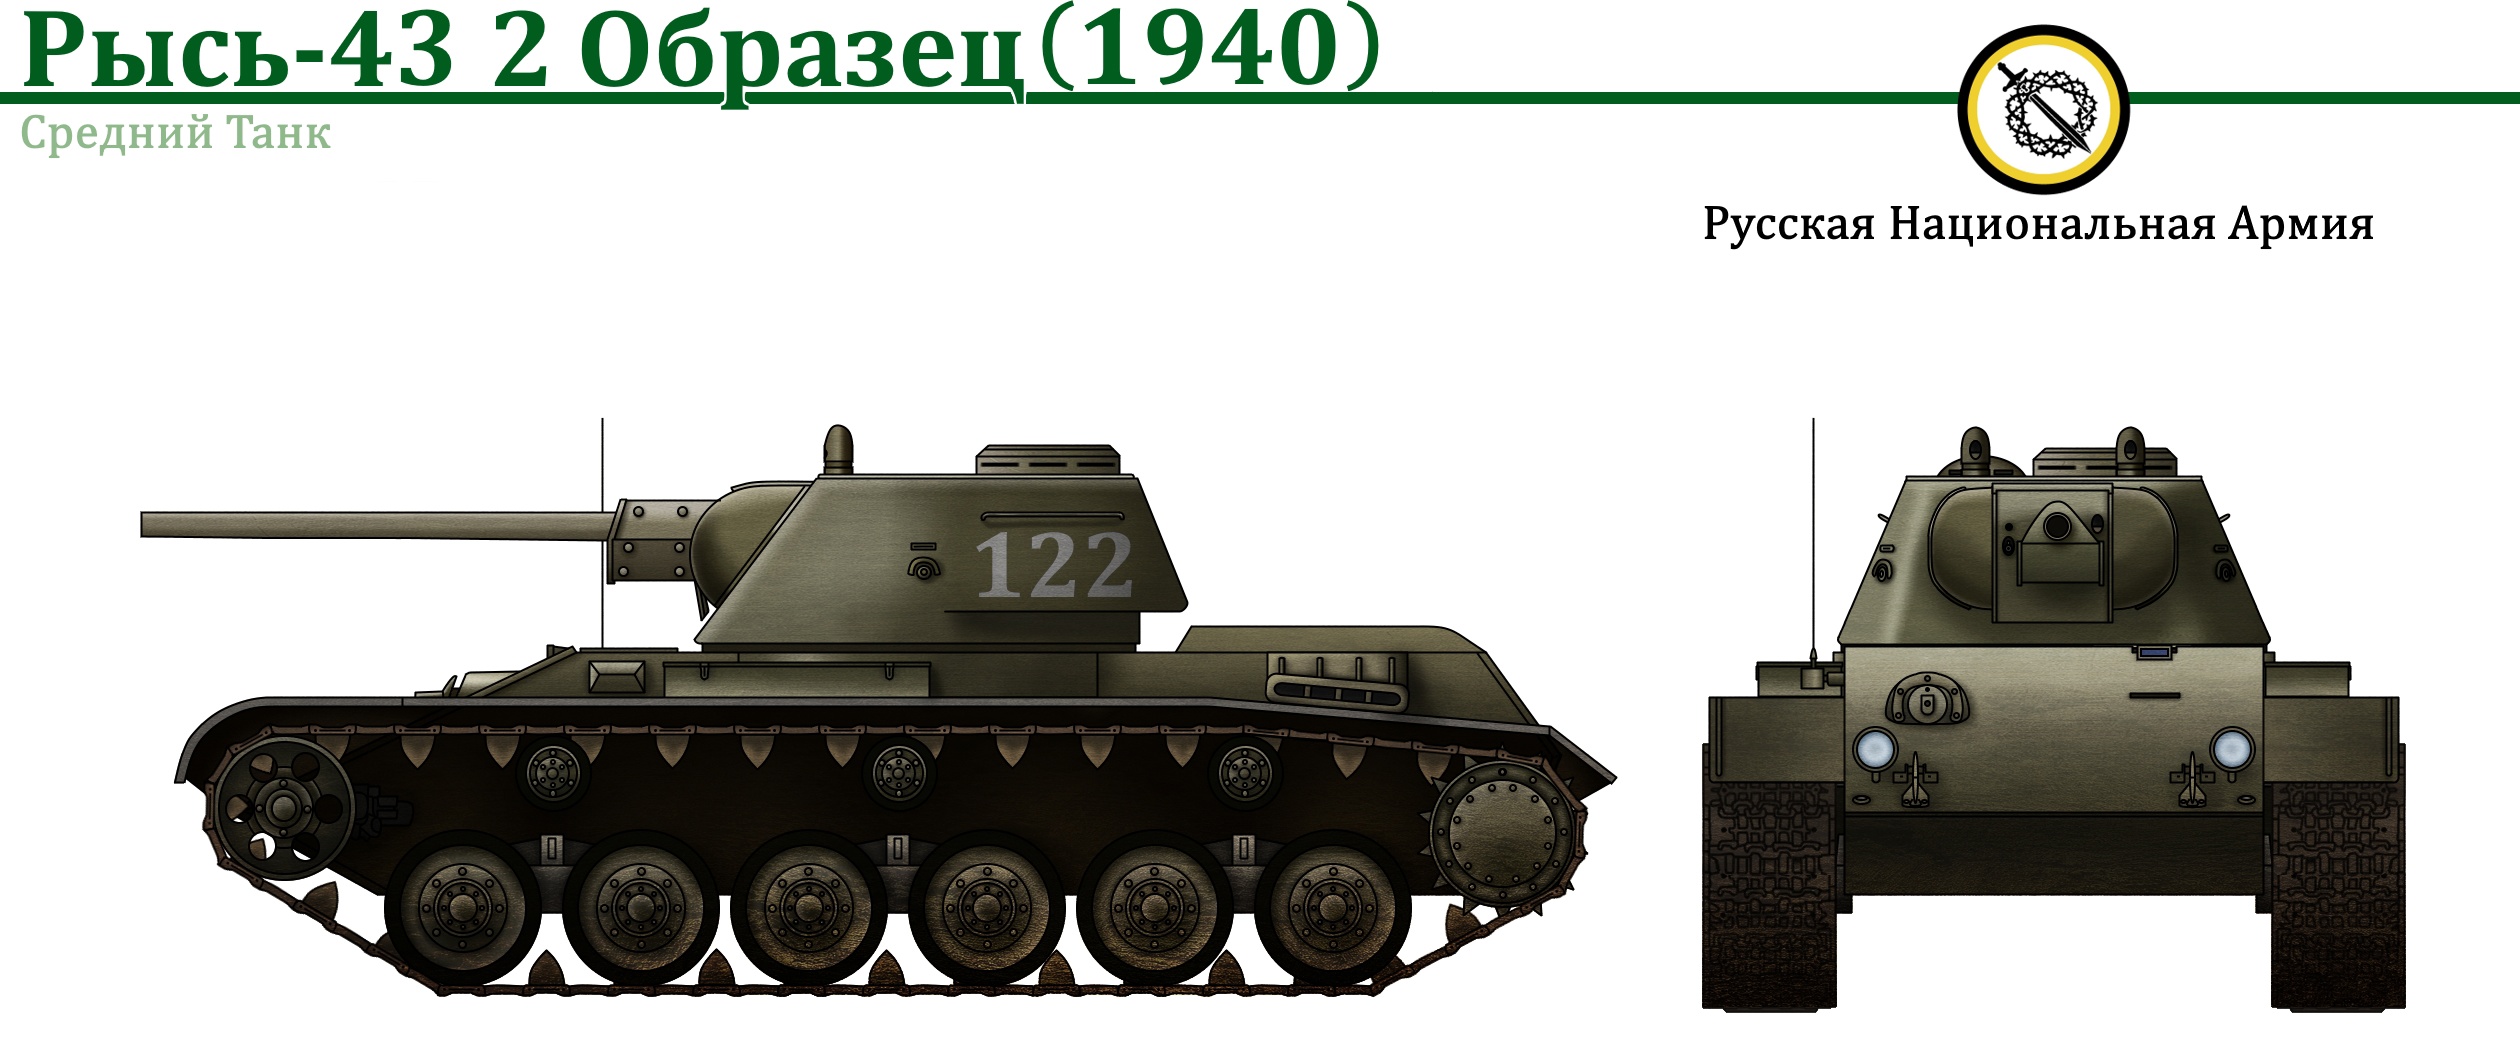 Рысь-43 и Объект 644. История развития среднего танка России из Vladkov Conspiracy Theory